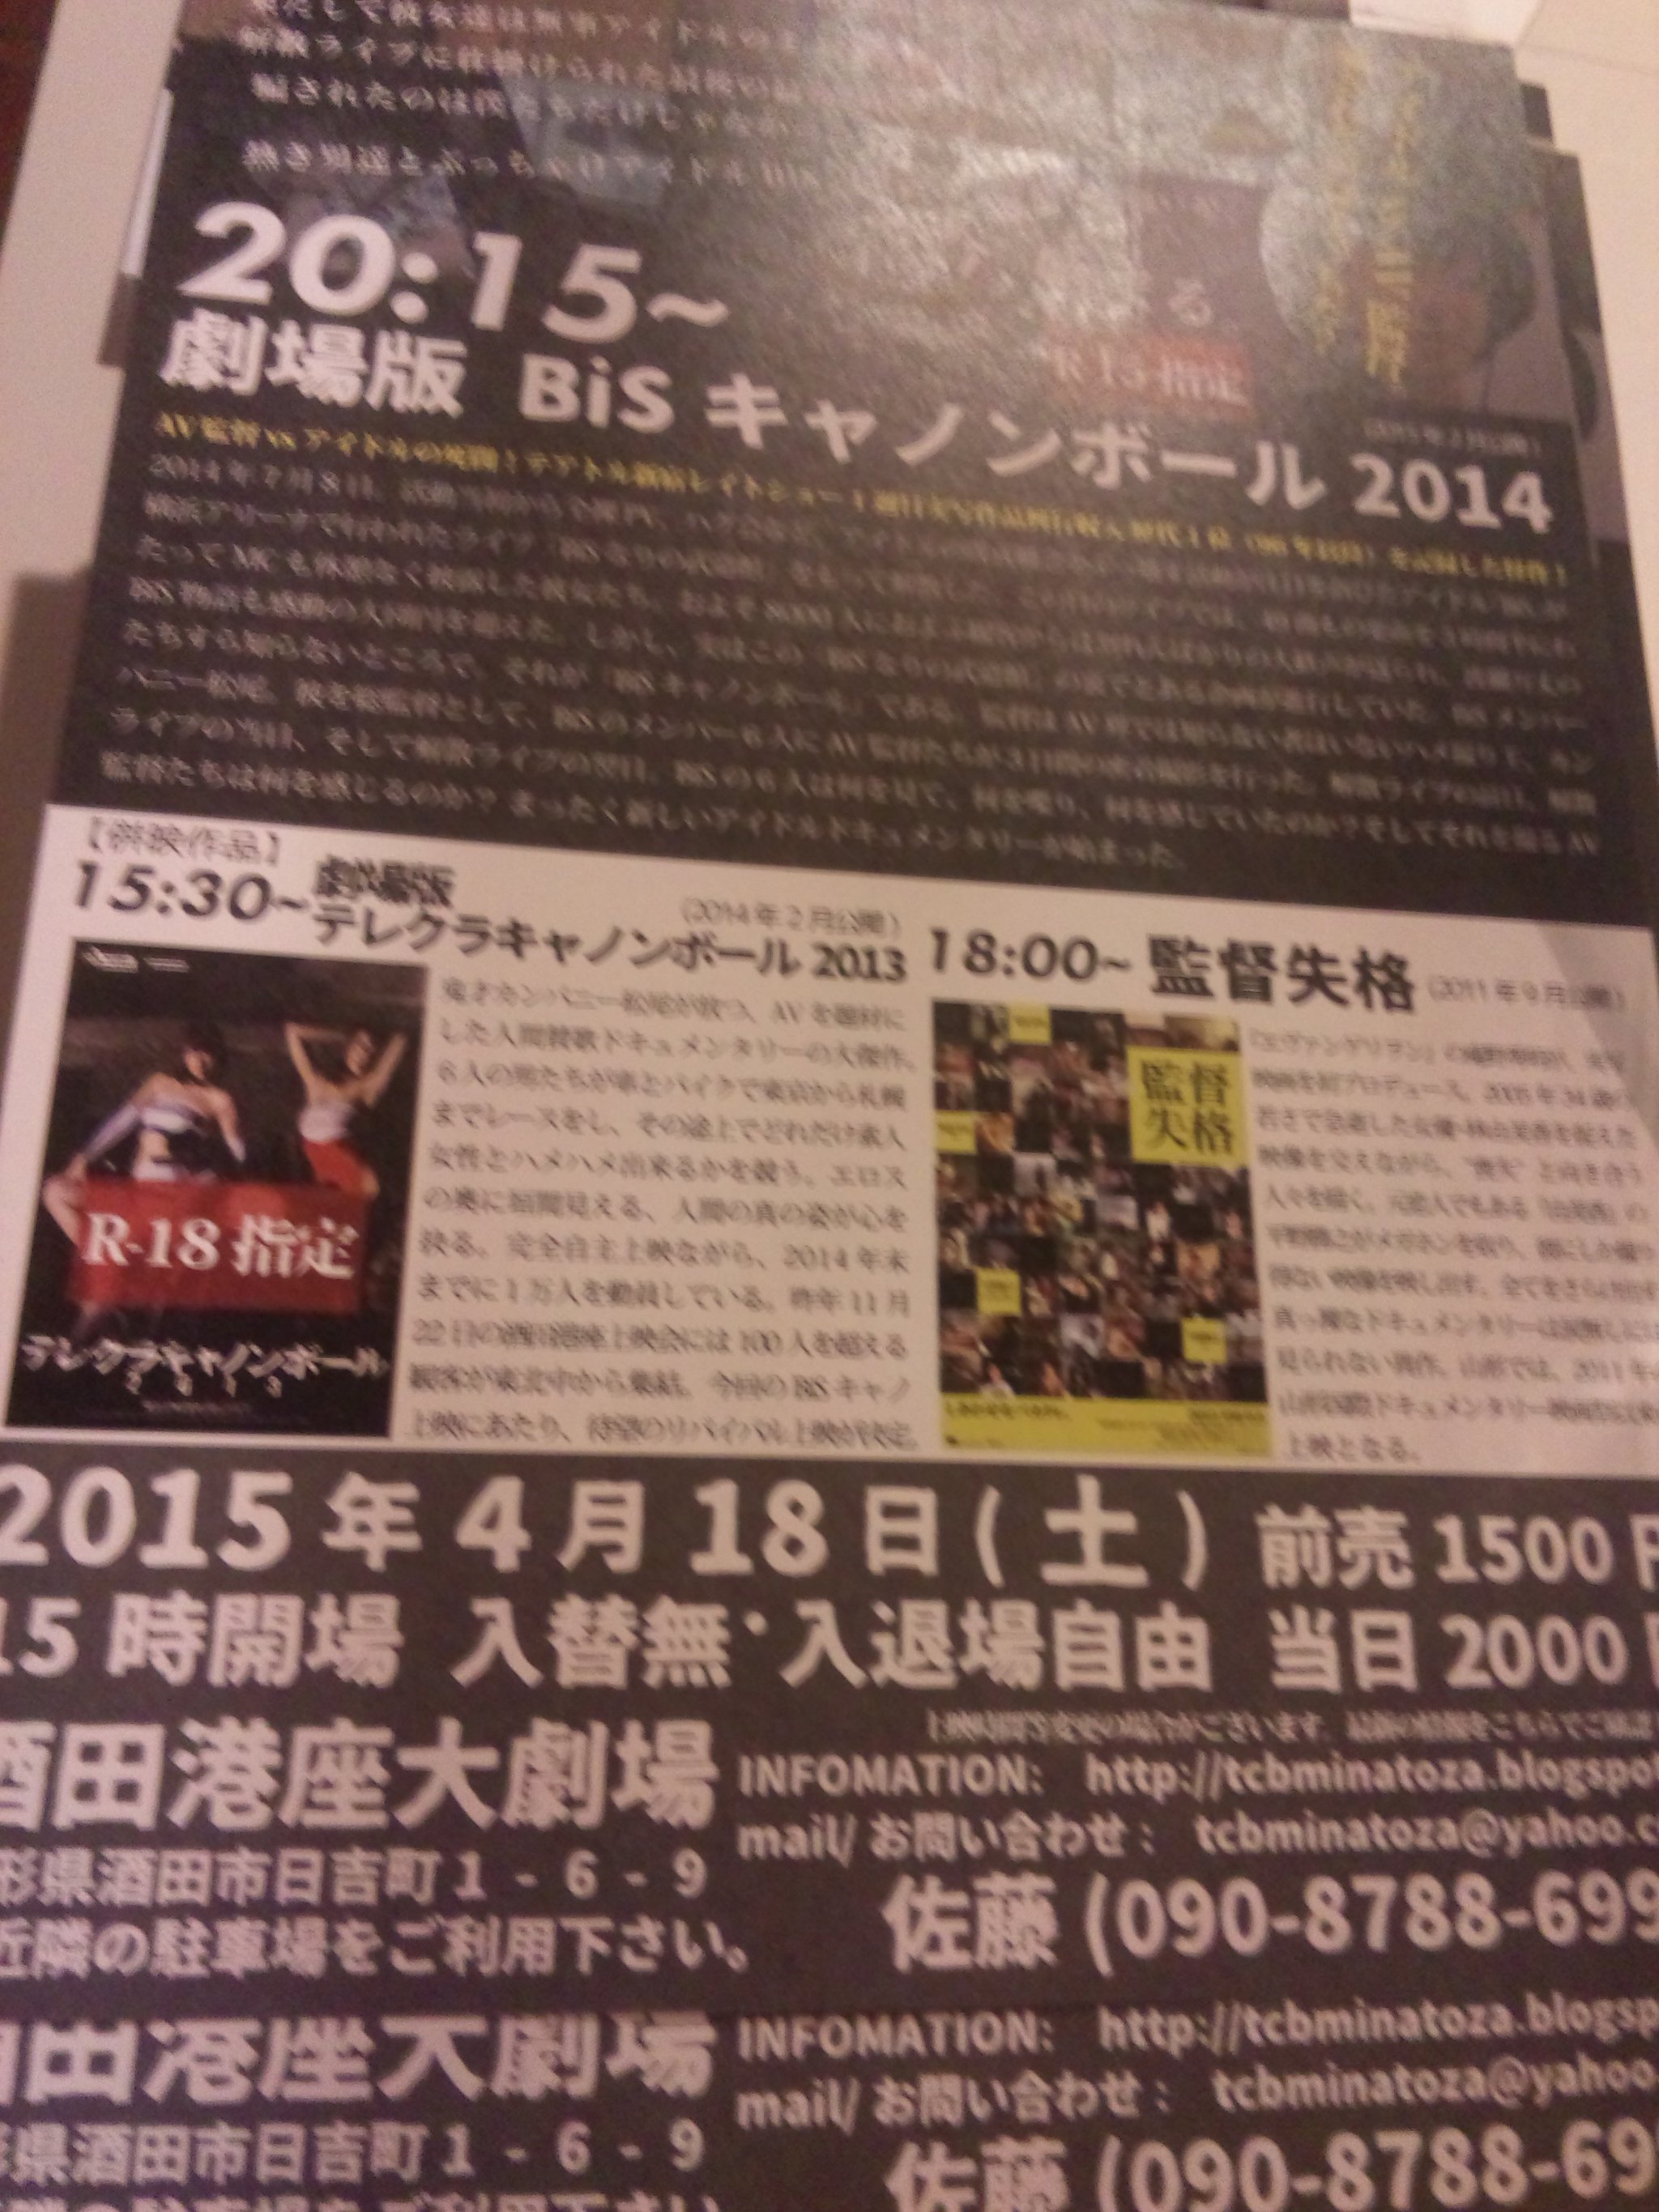 本日、BISキャノンボール劇場版上映&カンパニー松尾トークショーです。